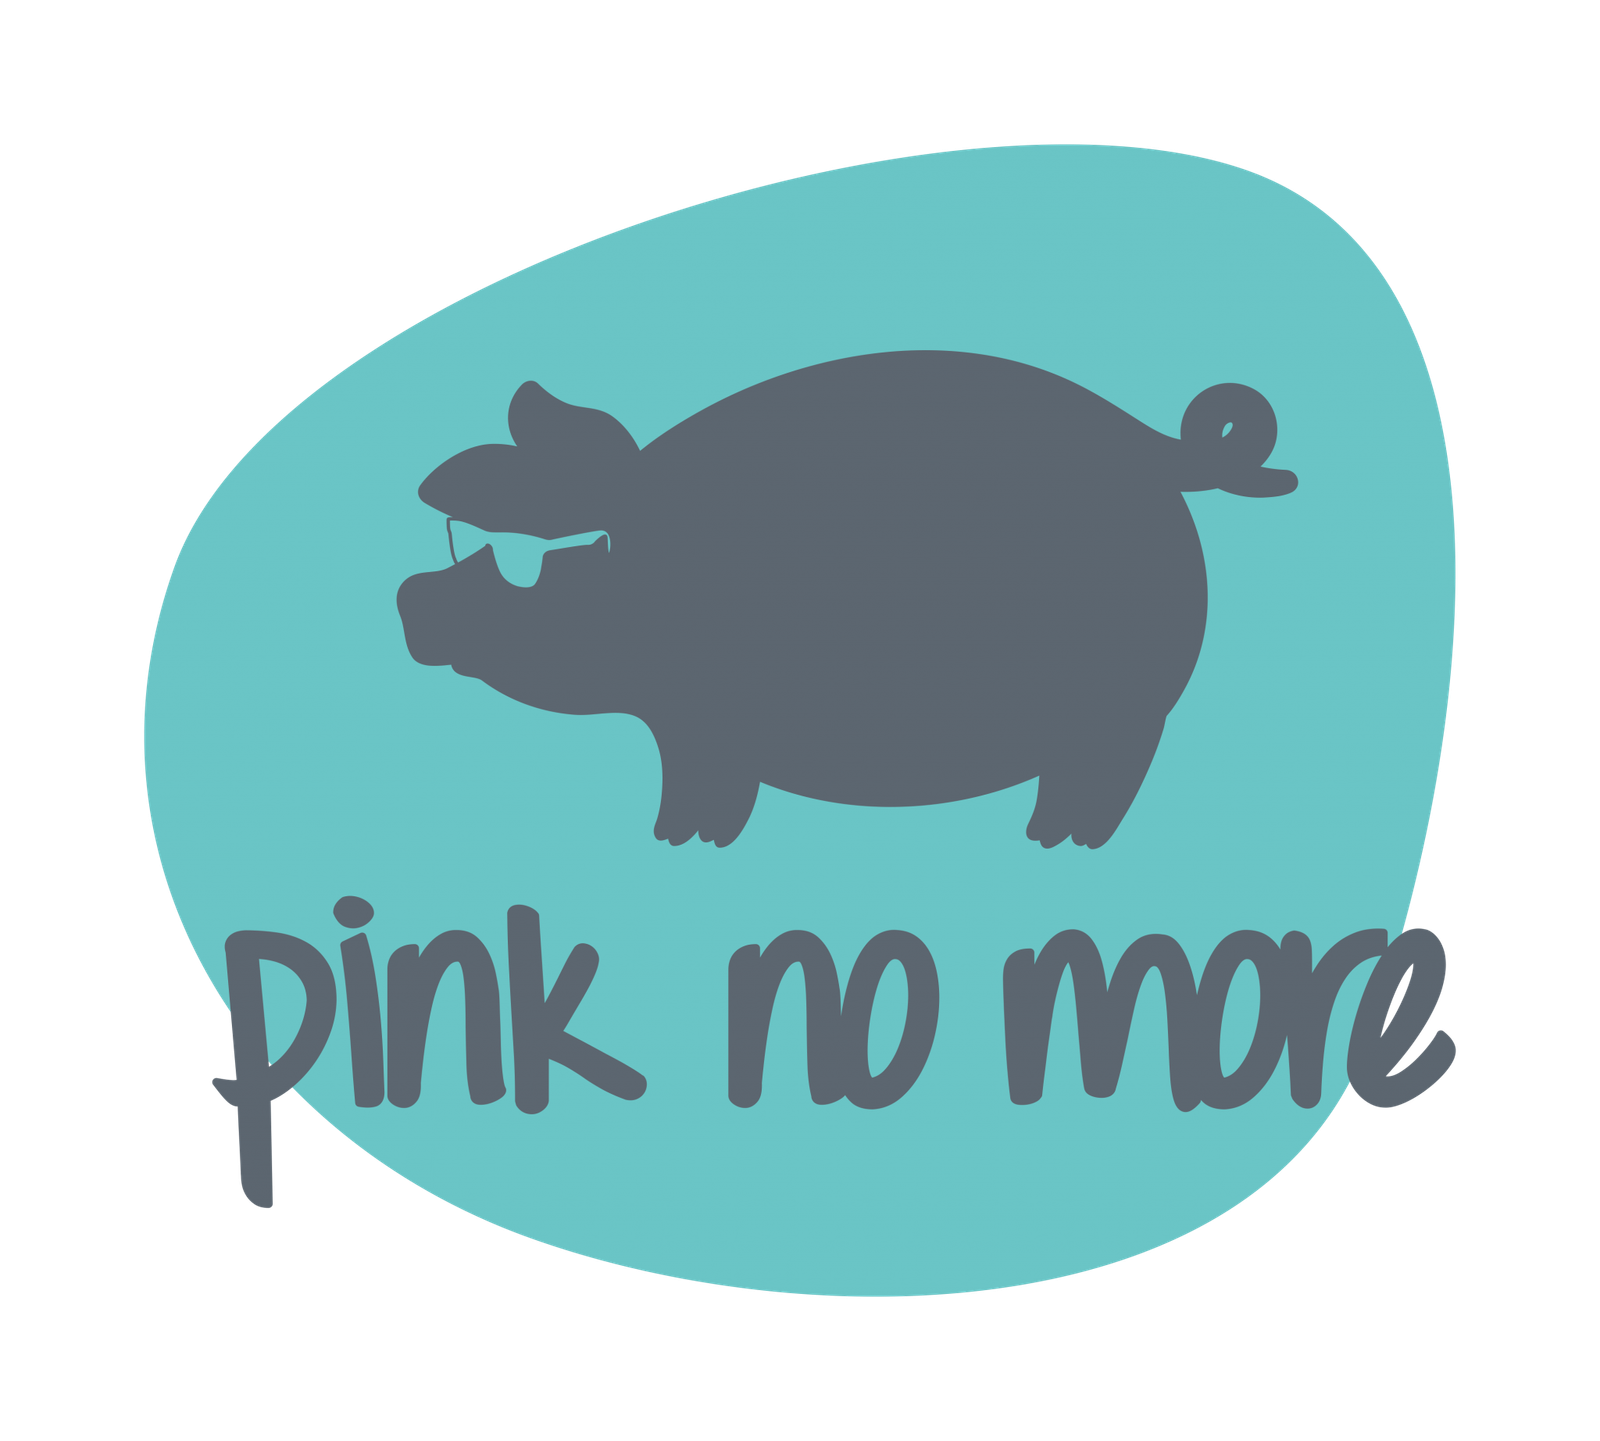 pinknomore logo